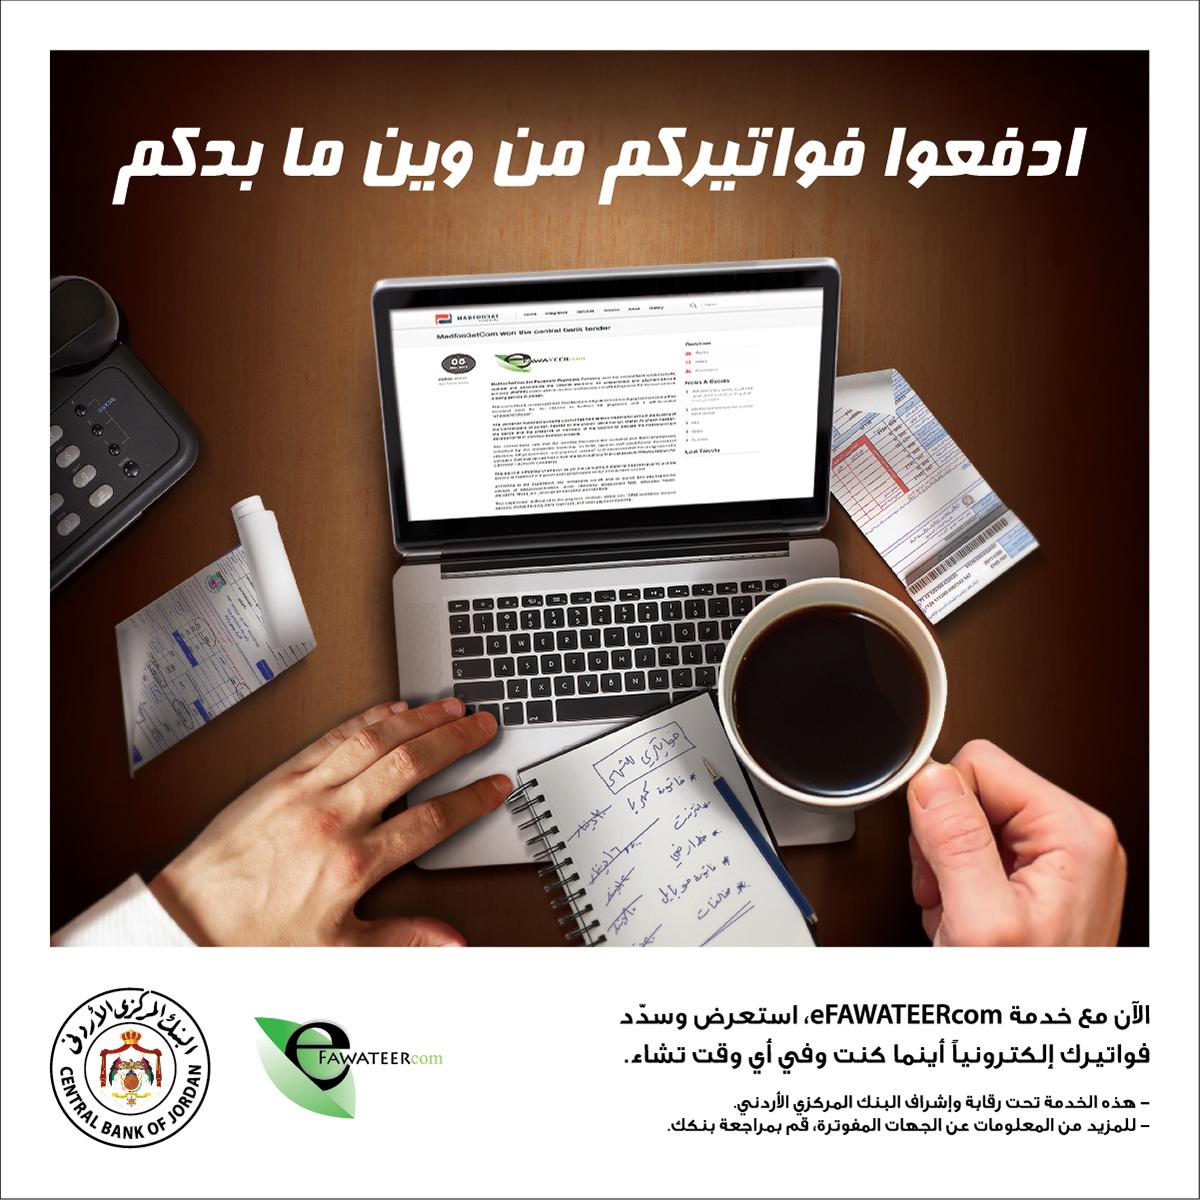 ادفعوا فواتيركم من وين ما بدكم مع خدمة eFAWATEERcom #Jordan #Jo #الأردن